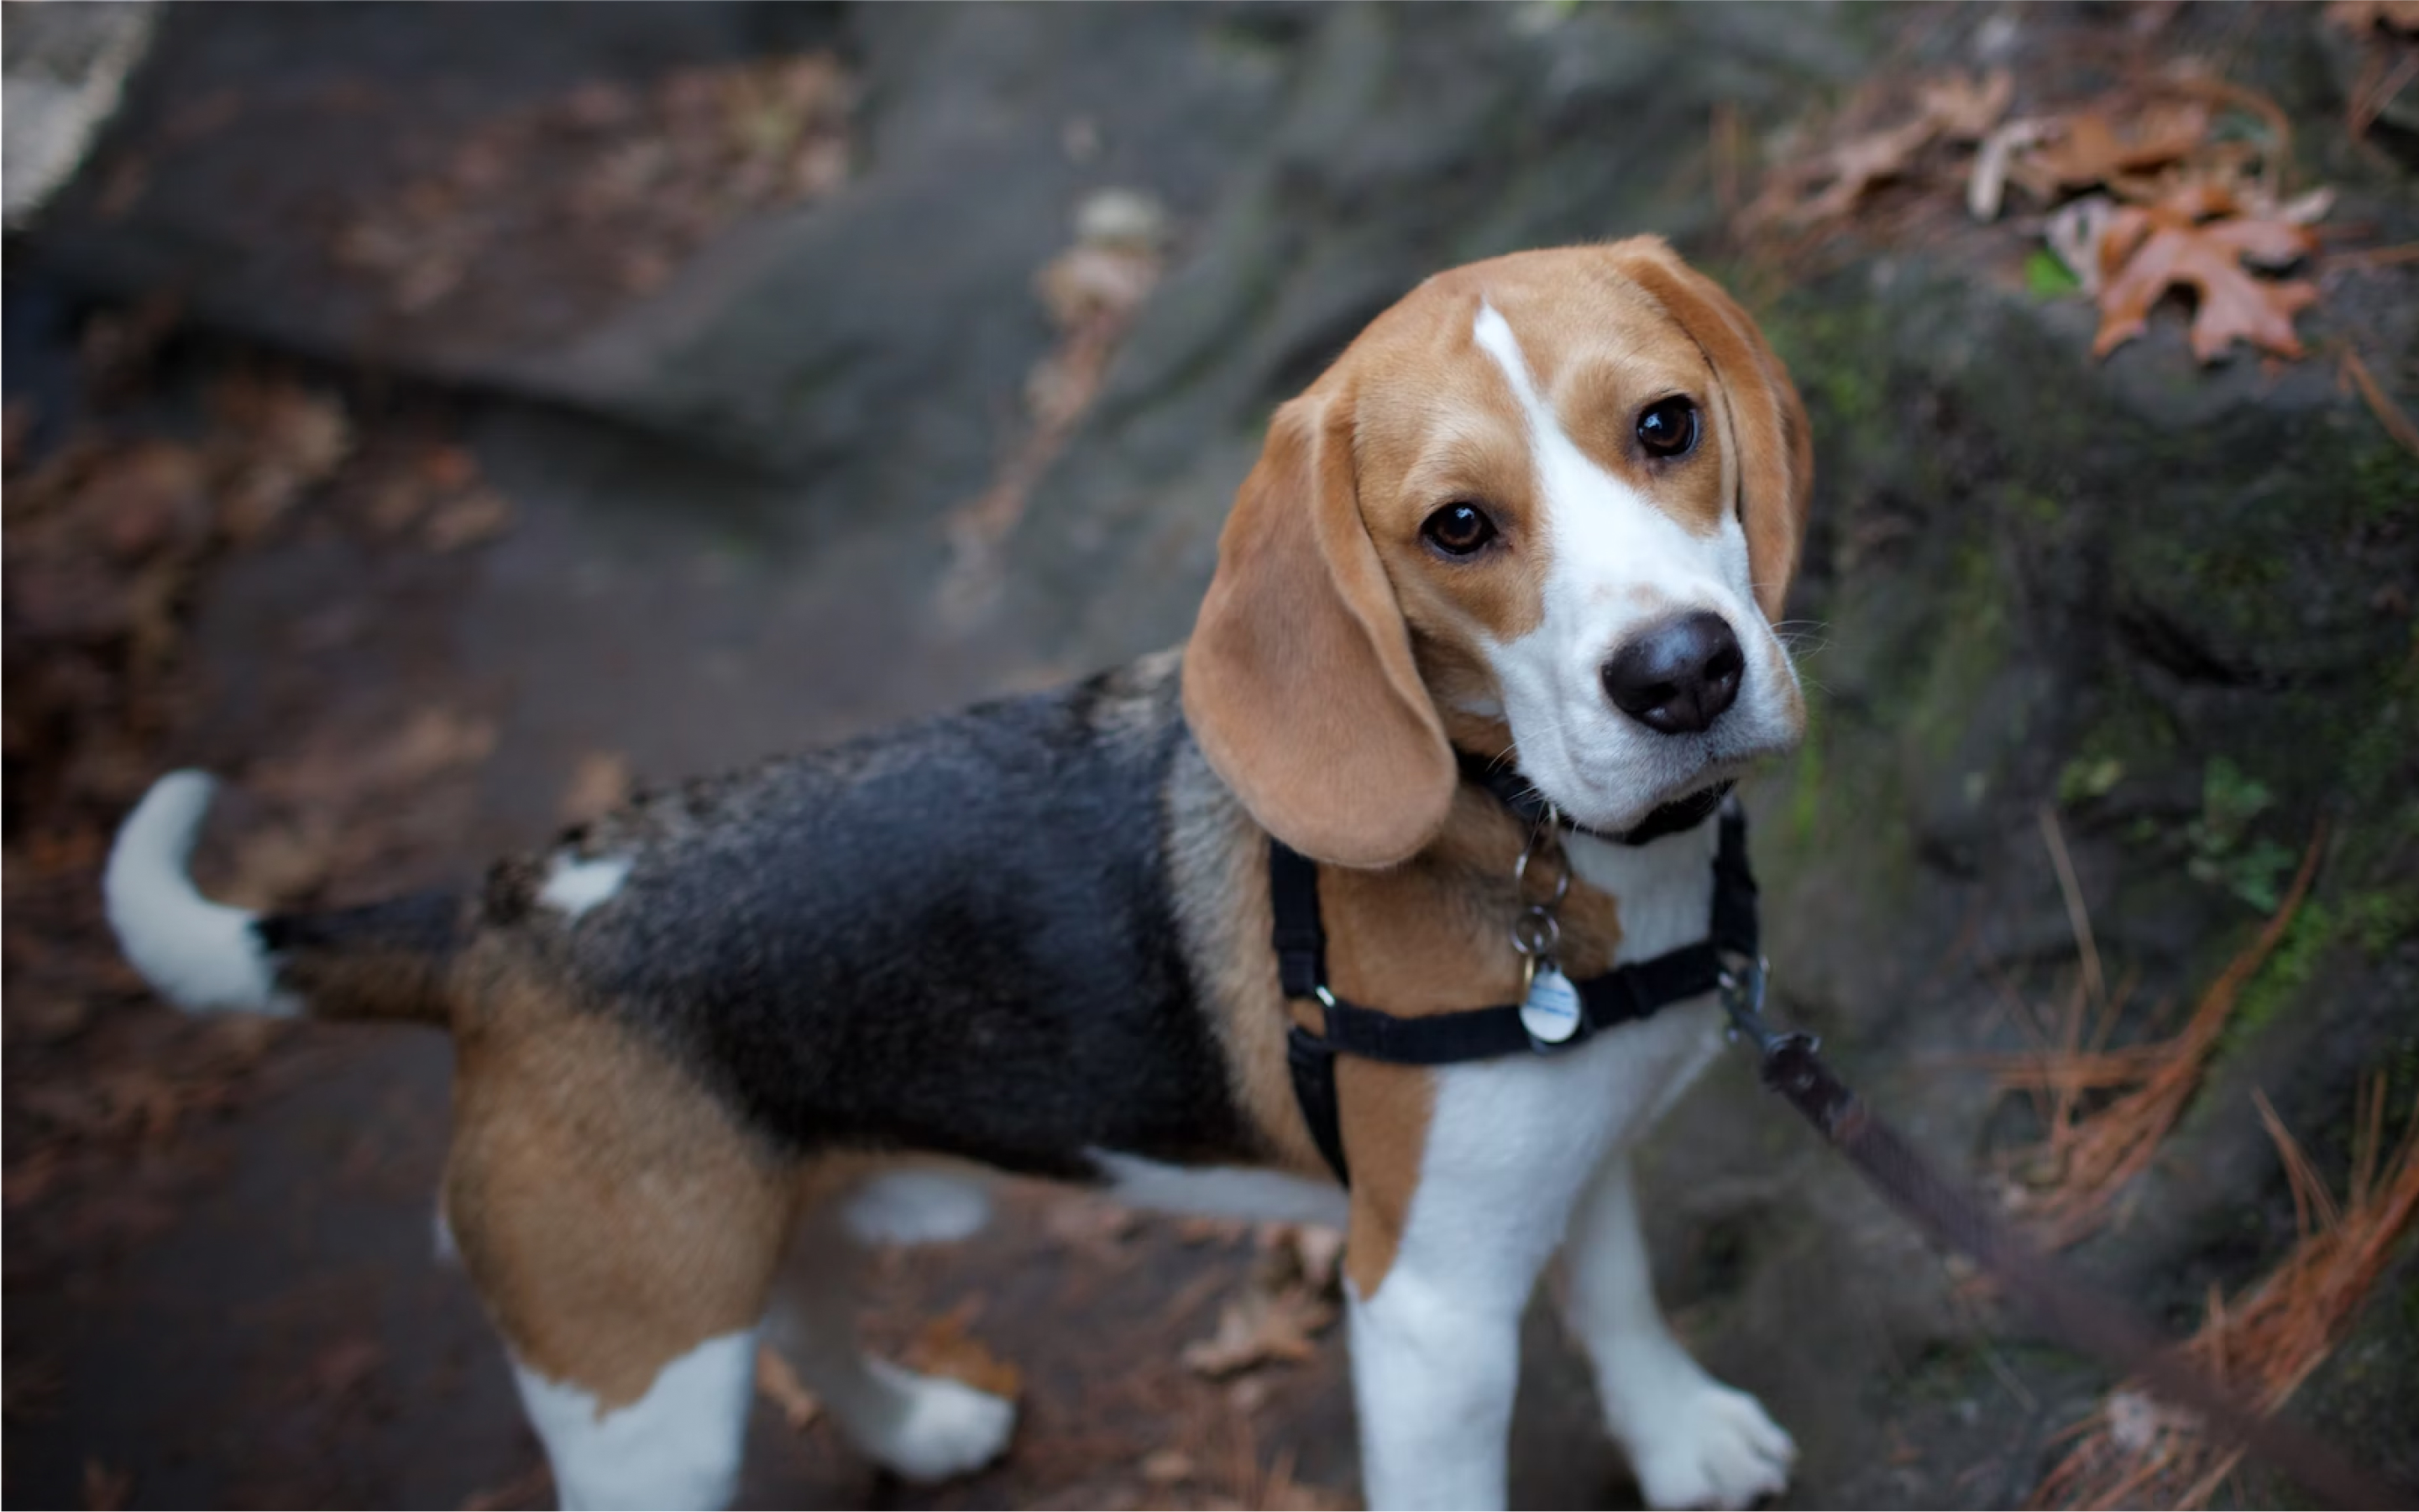 A Beagle wearing a Fi collar